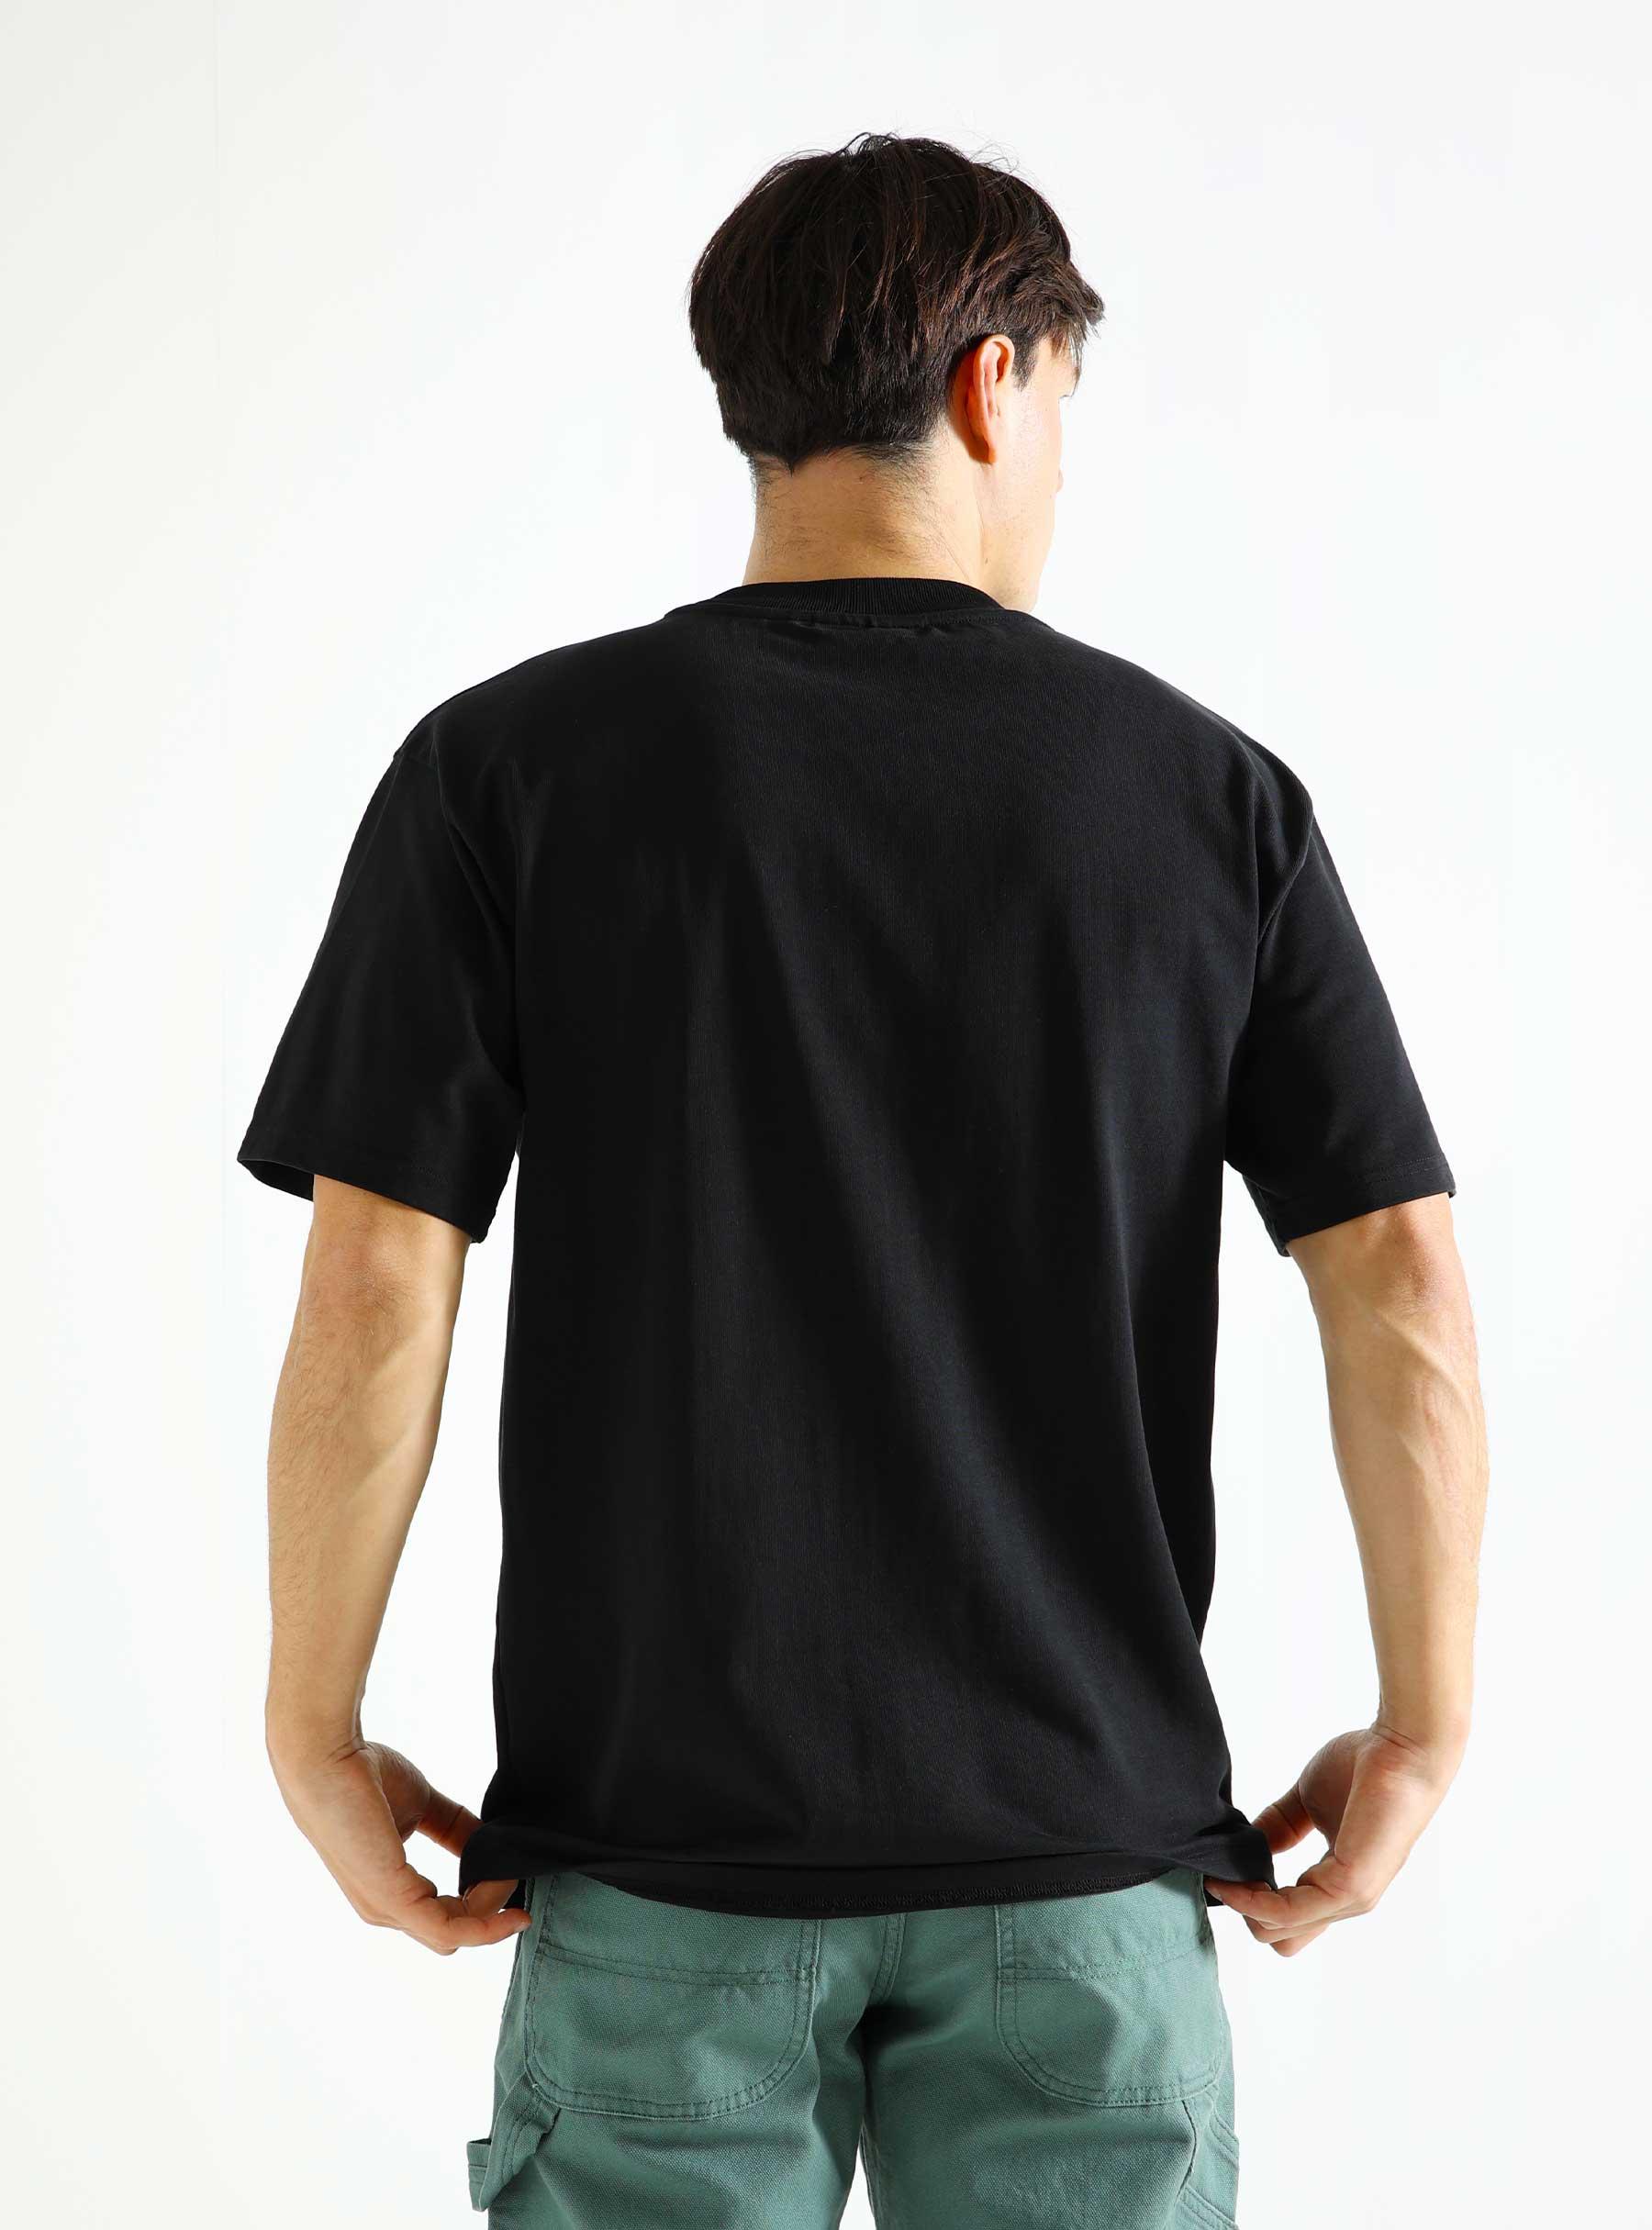 Kaya Jan Thiel T-Shirt Black